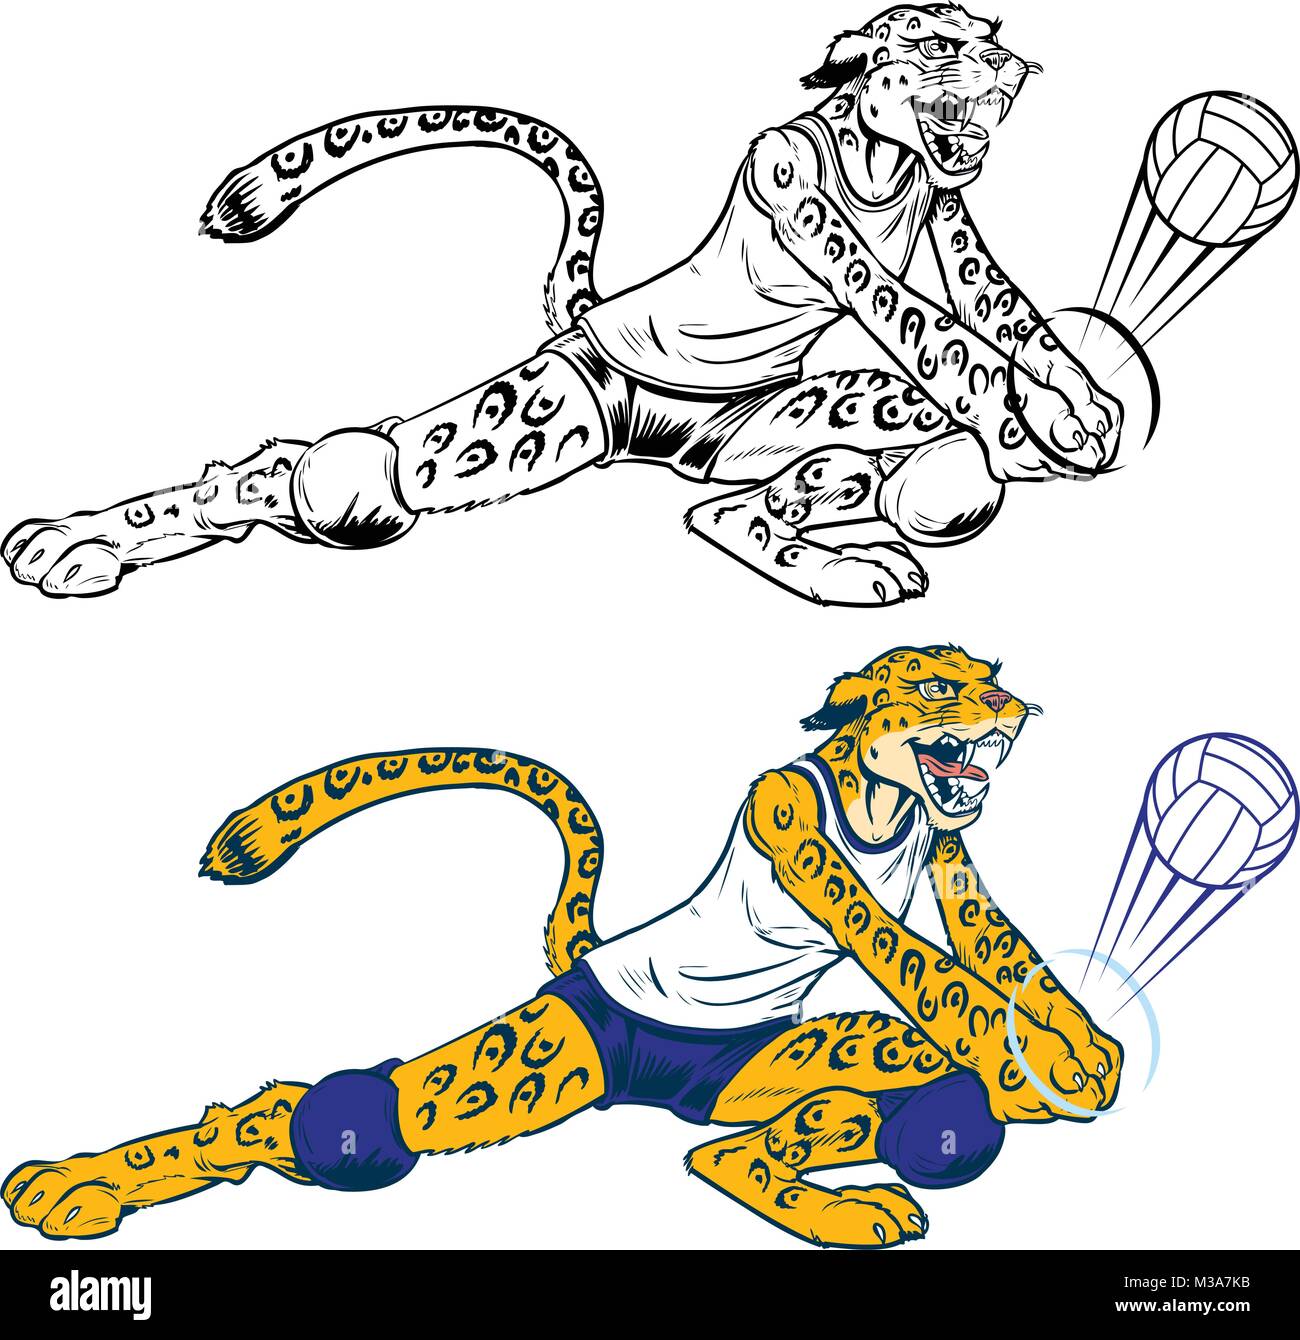 Vektor cartoon Clipart Illustration einer Dame Wildcat, Leopard oder Jaguar Volleyballspieler Maskottchen ein Graben. Charakter, Kugel, und einheitlich sind auf Stock Vektor